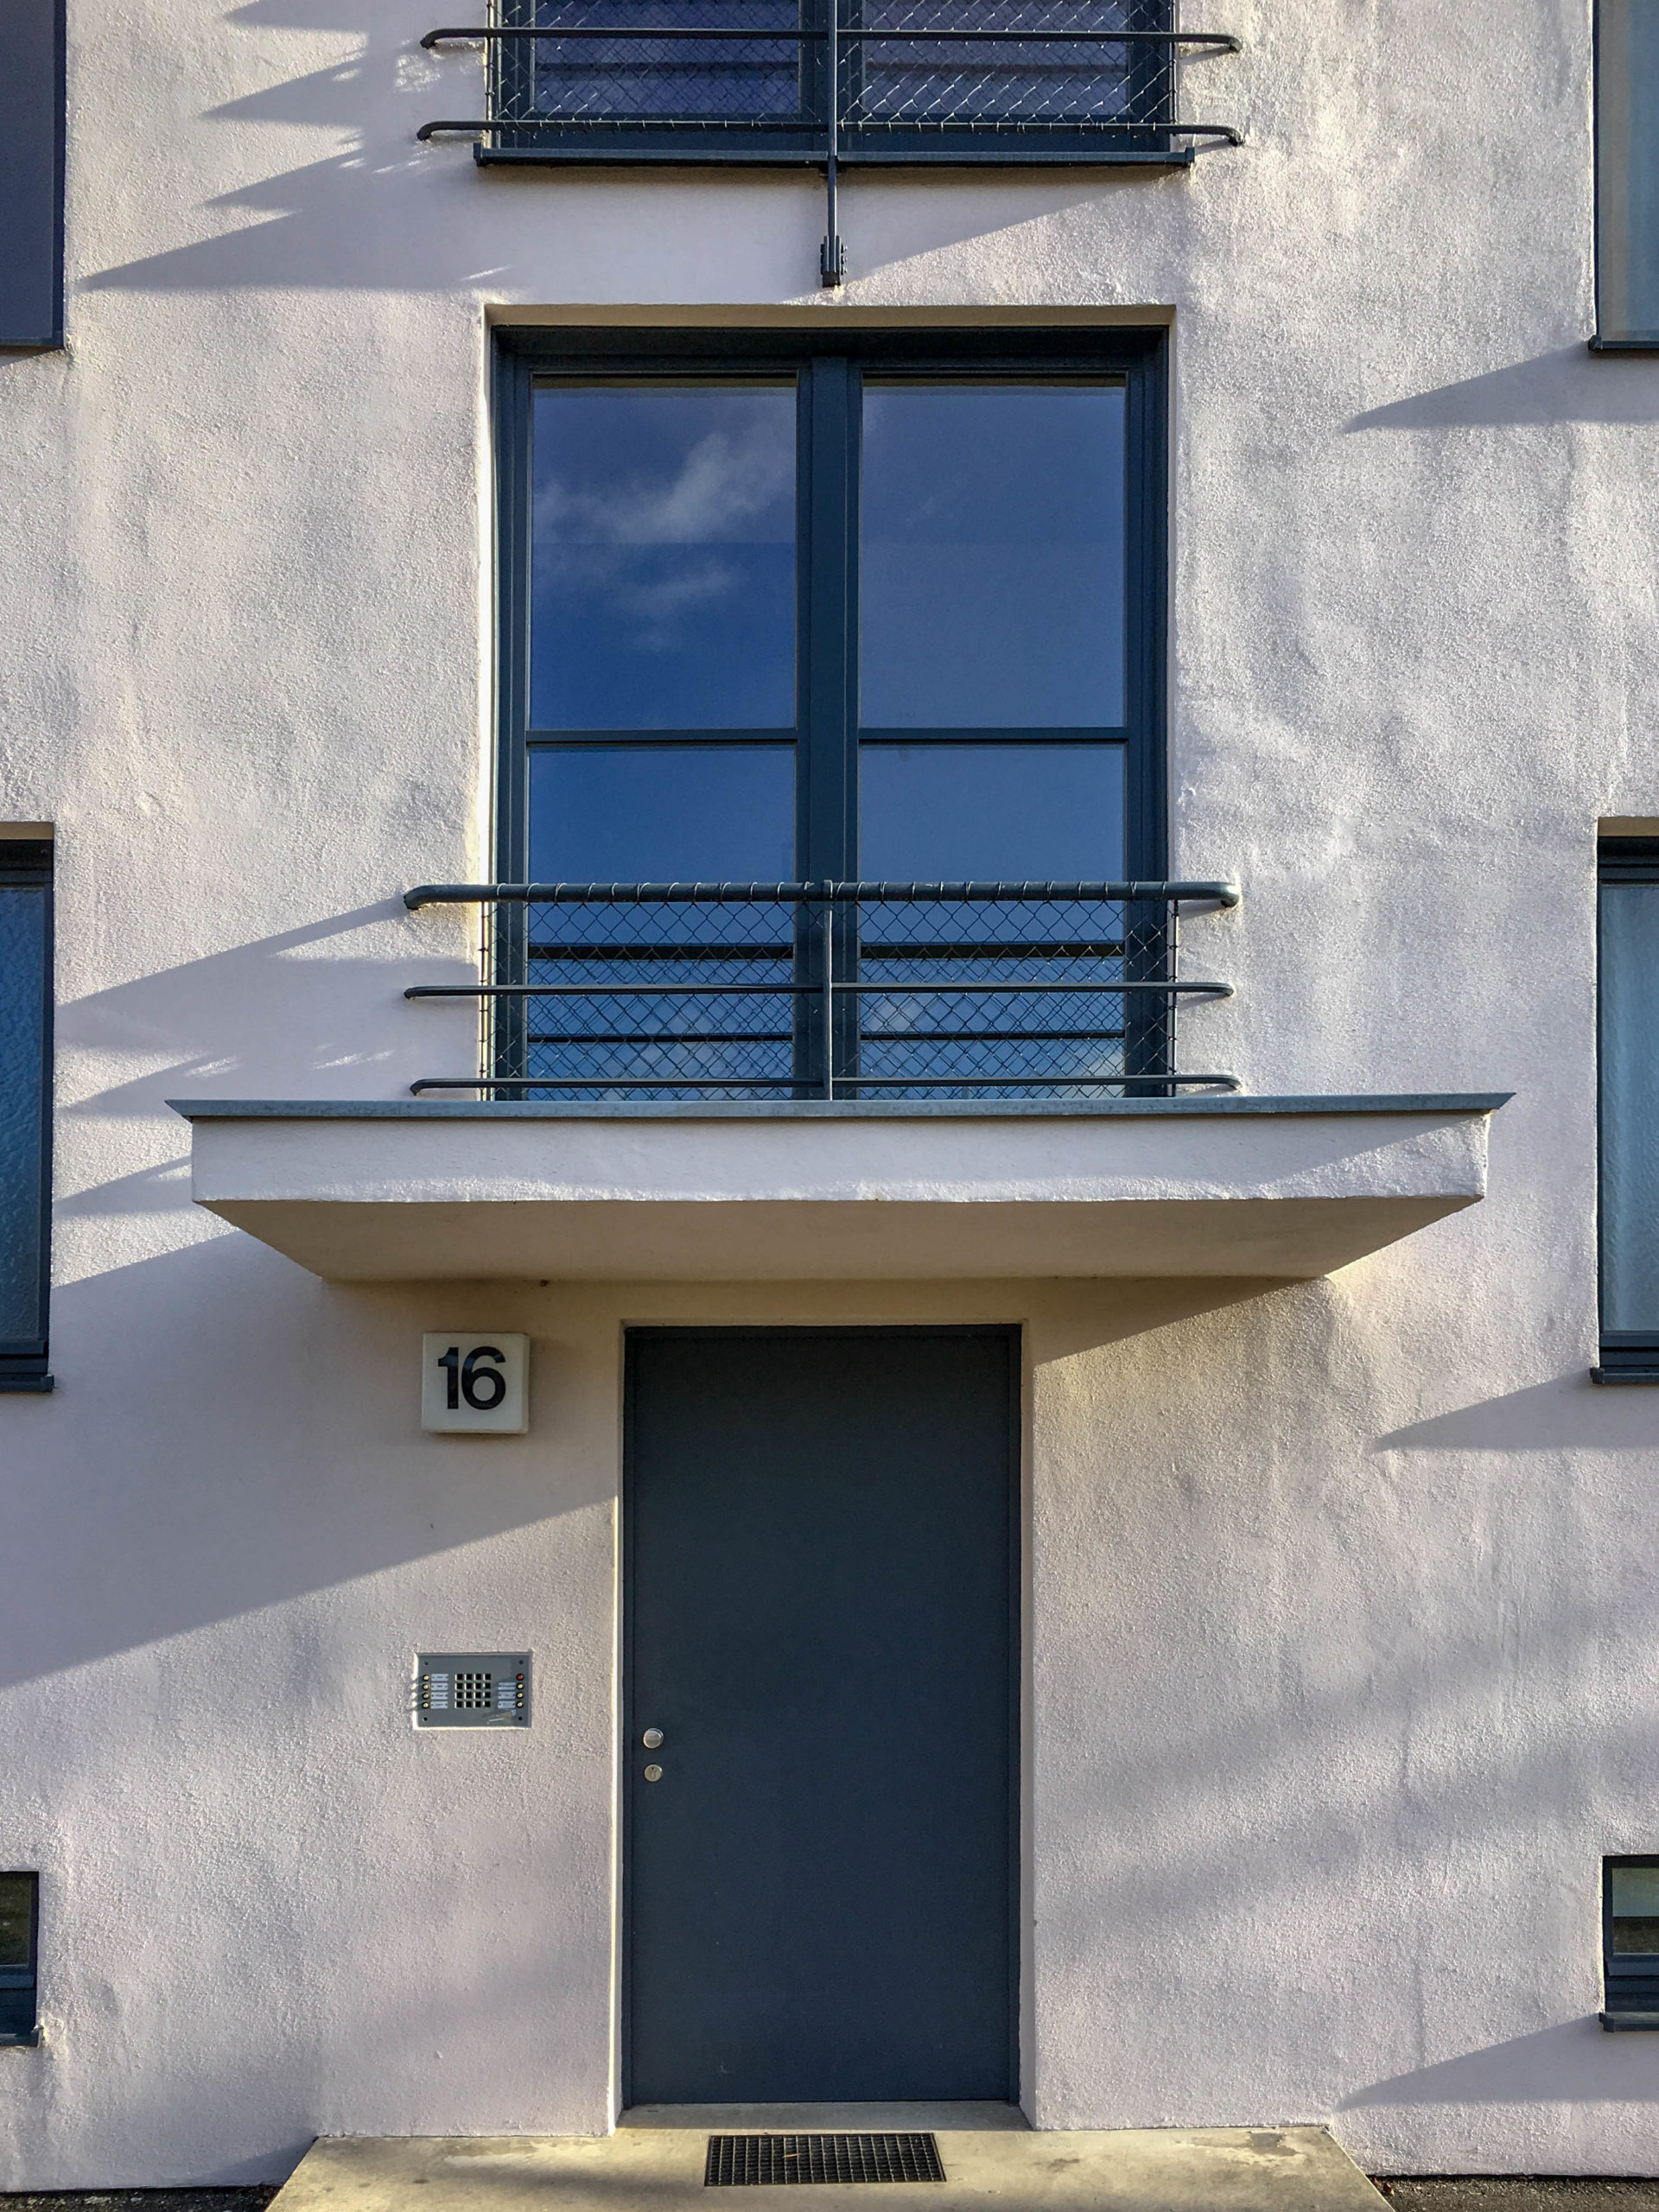 Residential complex, 1927. Architect: Mies van der Rohe. Photo: Daniela Christmann